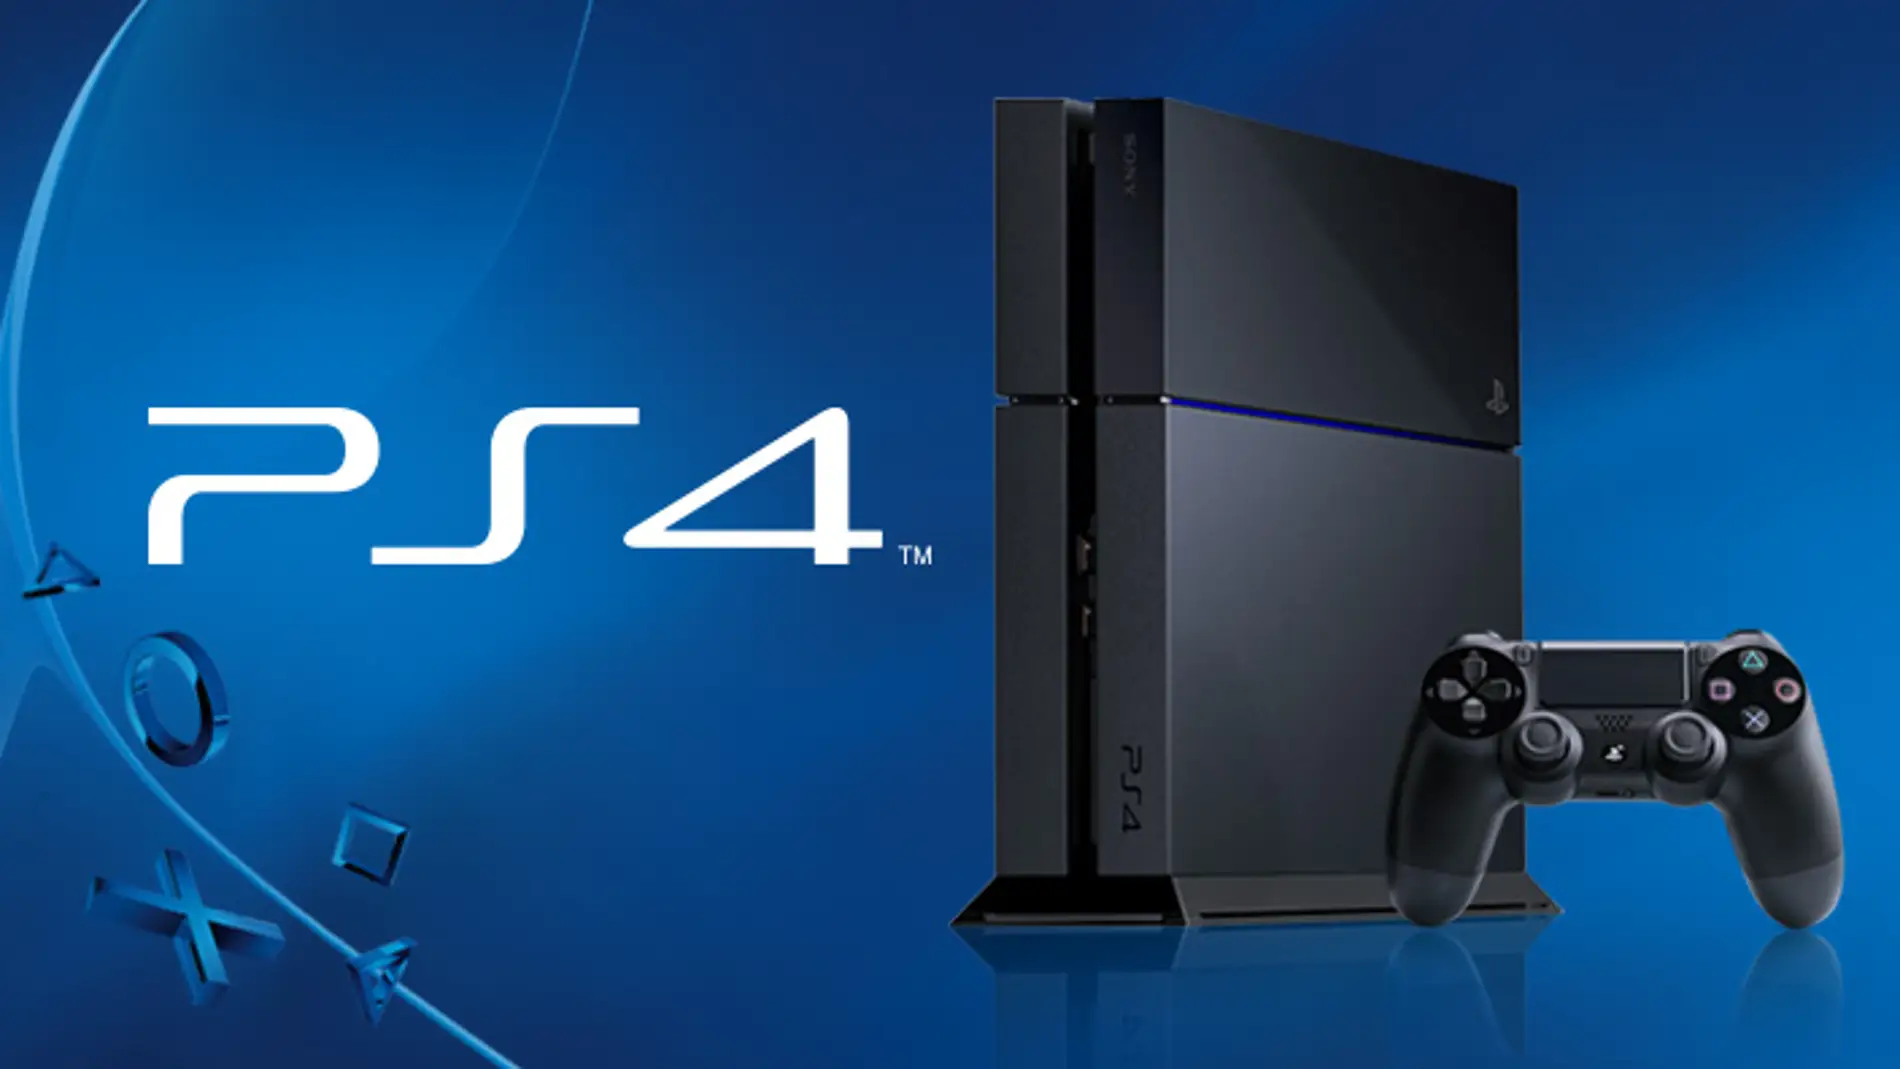 El sendero Pelearse proposición PlayStation 4 podría bajar su precio en breve